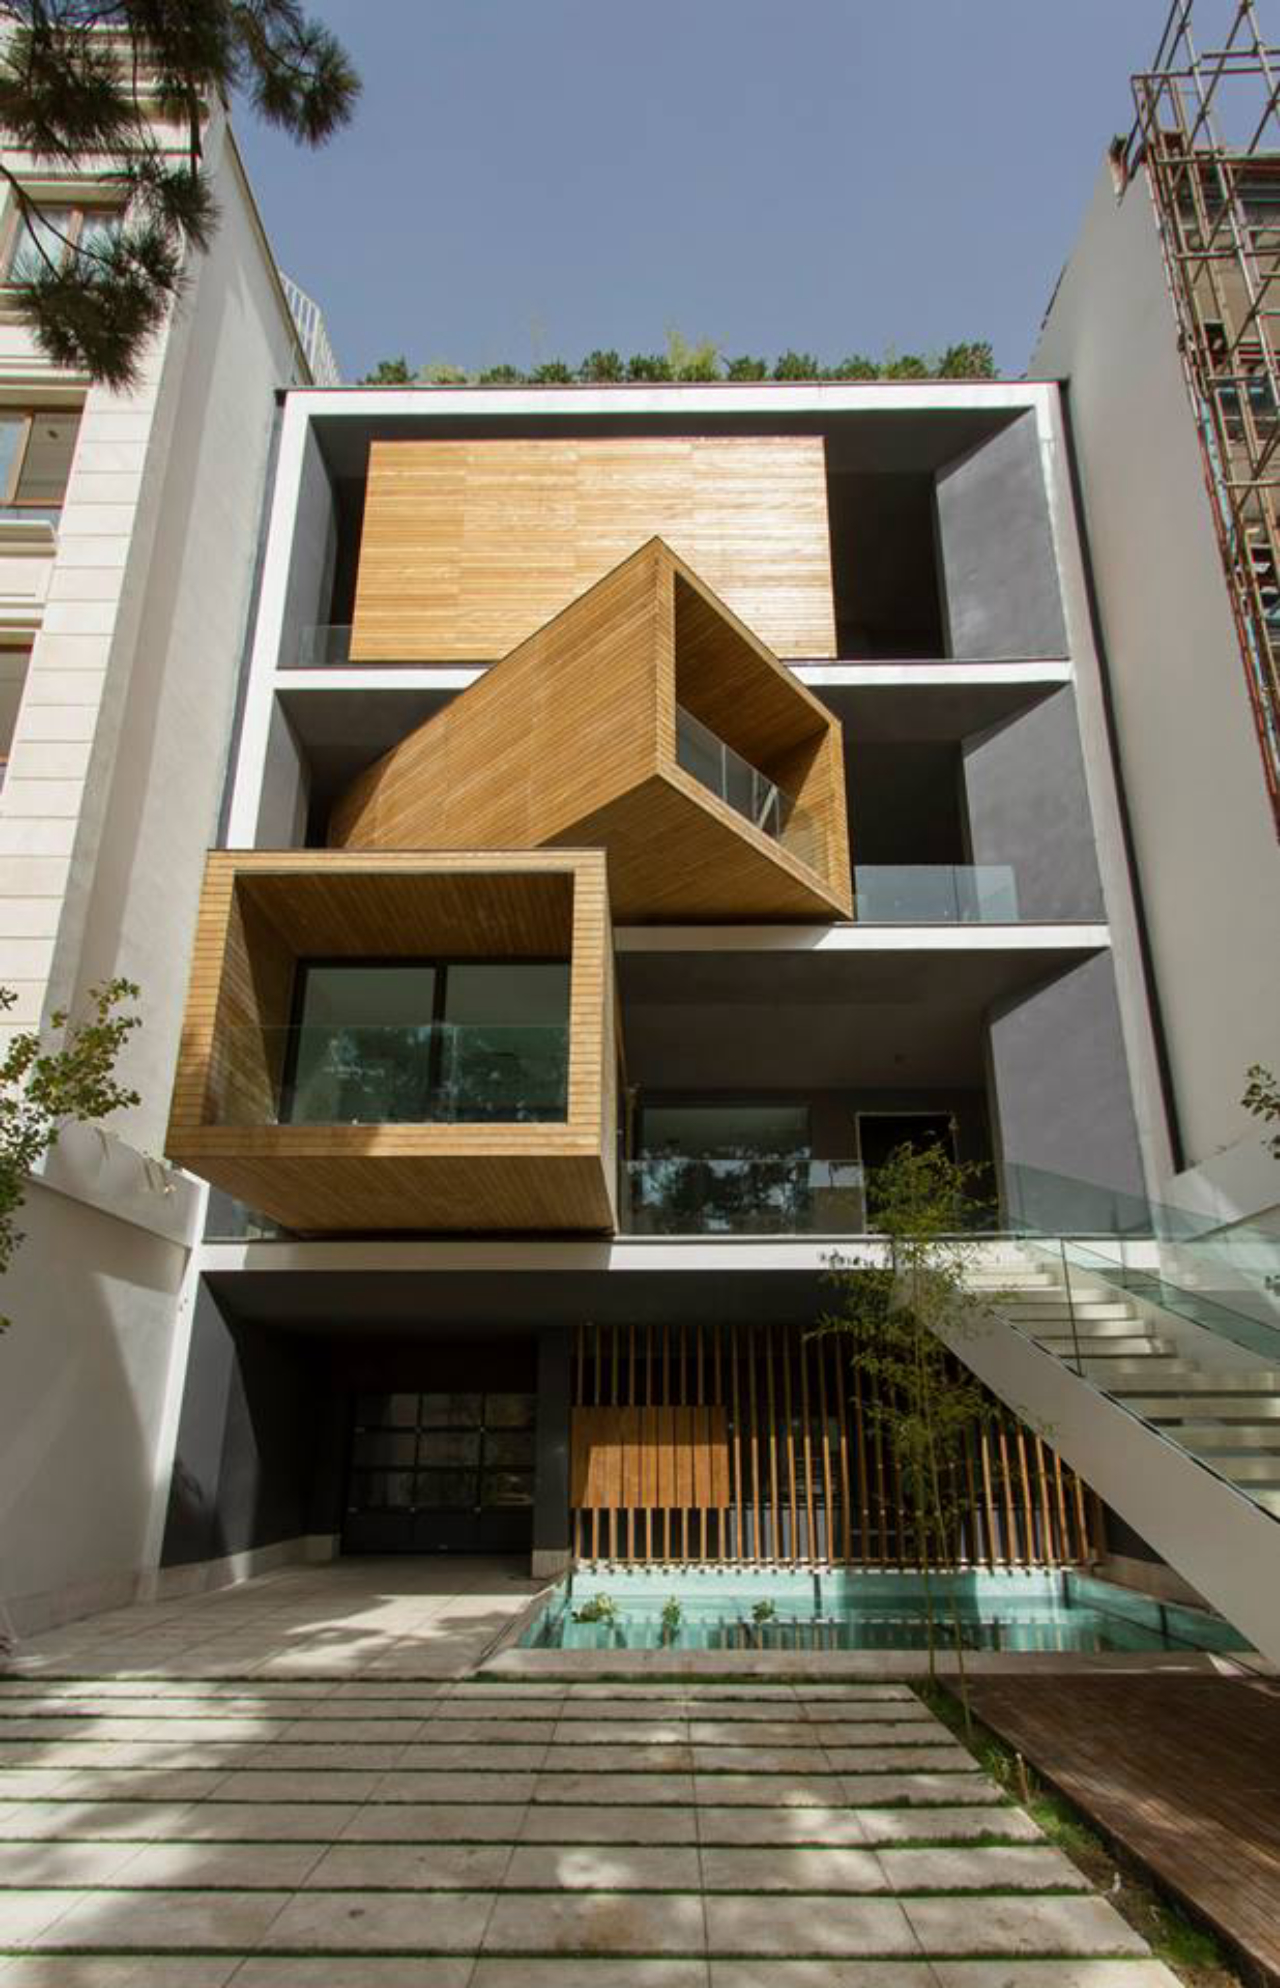 Como o terreno é retangular, a casa é uma verdadeira mansão vertical, com sete pavimentos. Foto: Divulgação Next Office